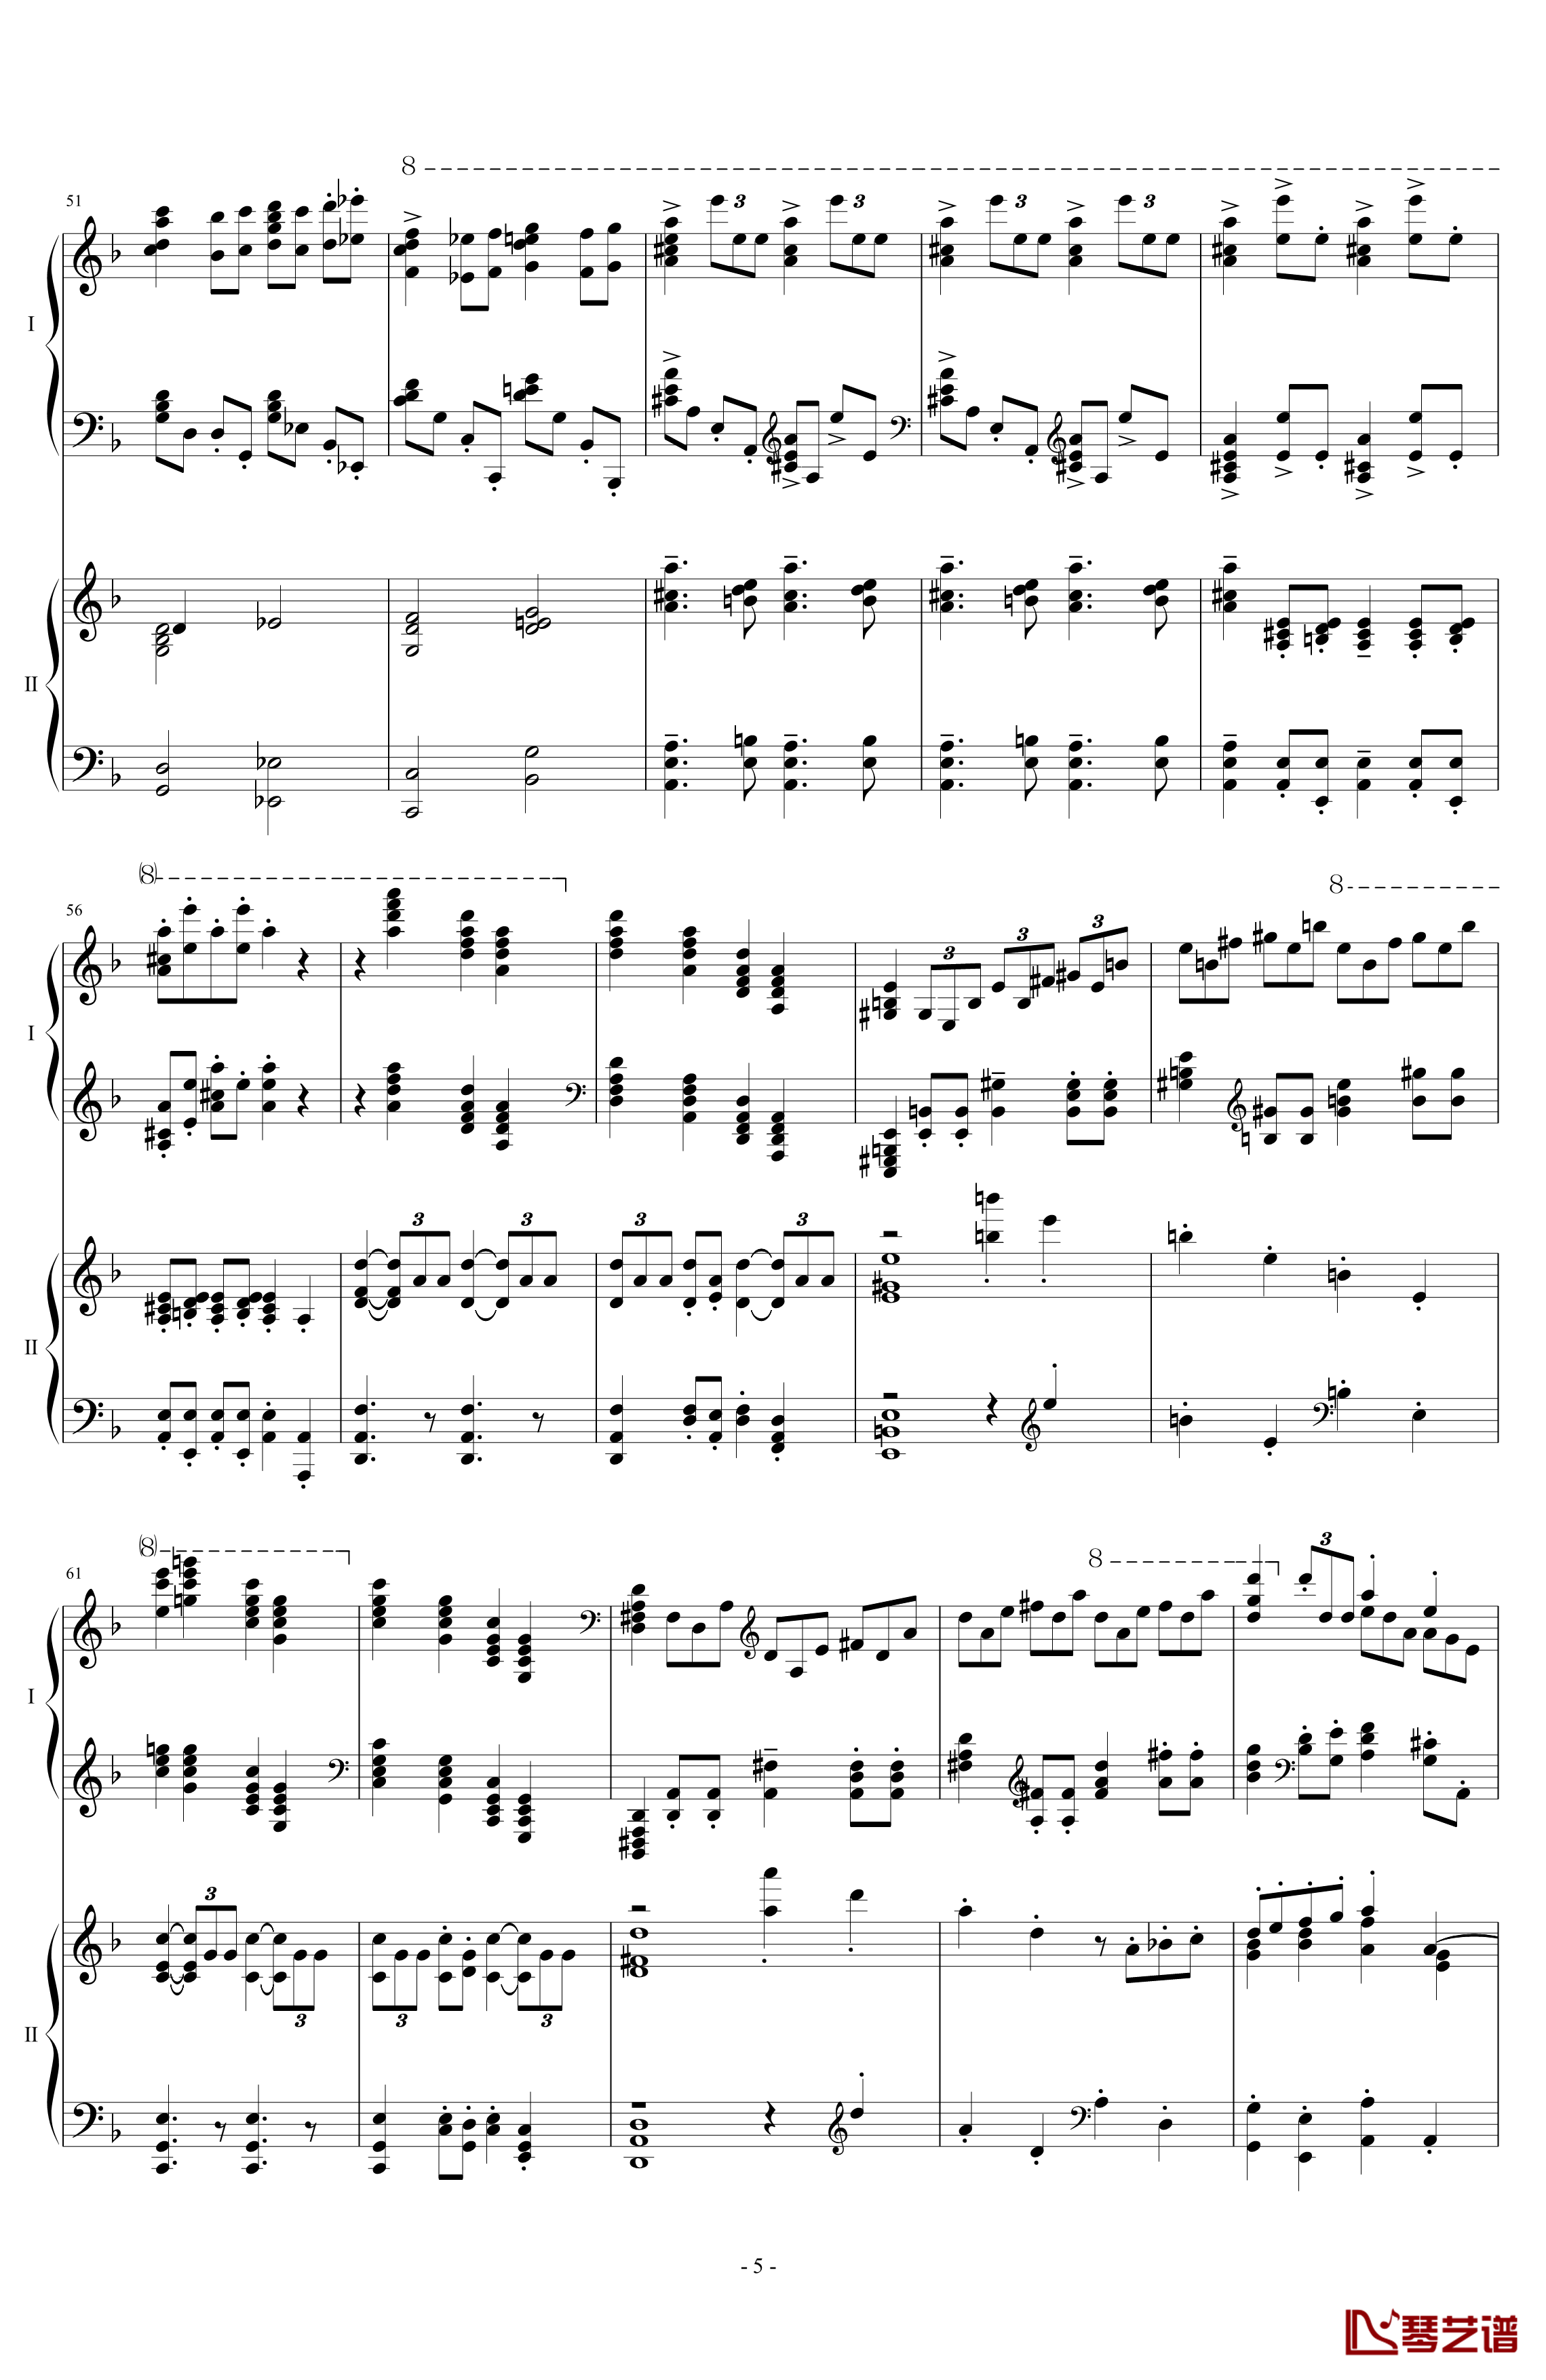 拉三第三乐章41页双钢琴钢琴谱-最难钢琴曲-拉赫马尼若夫5